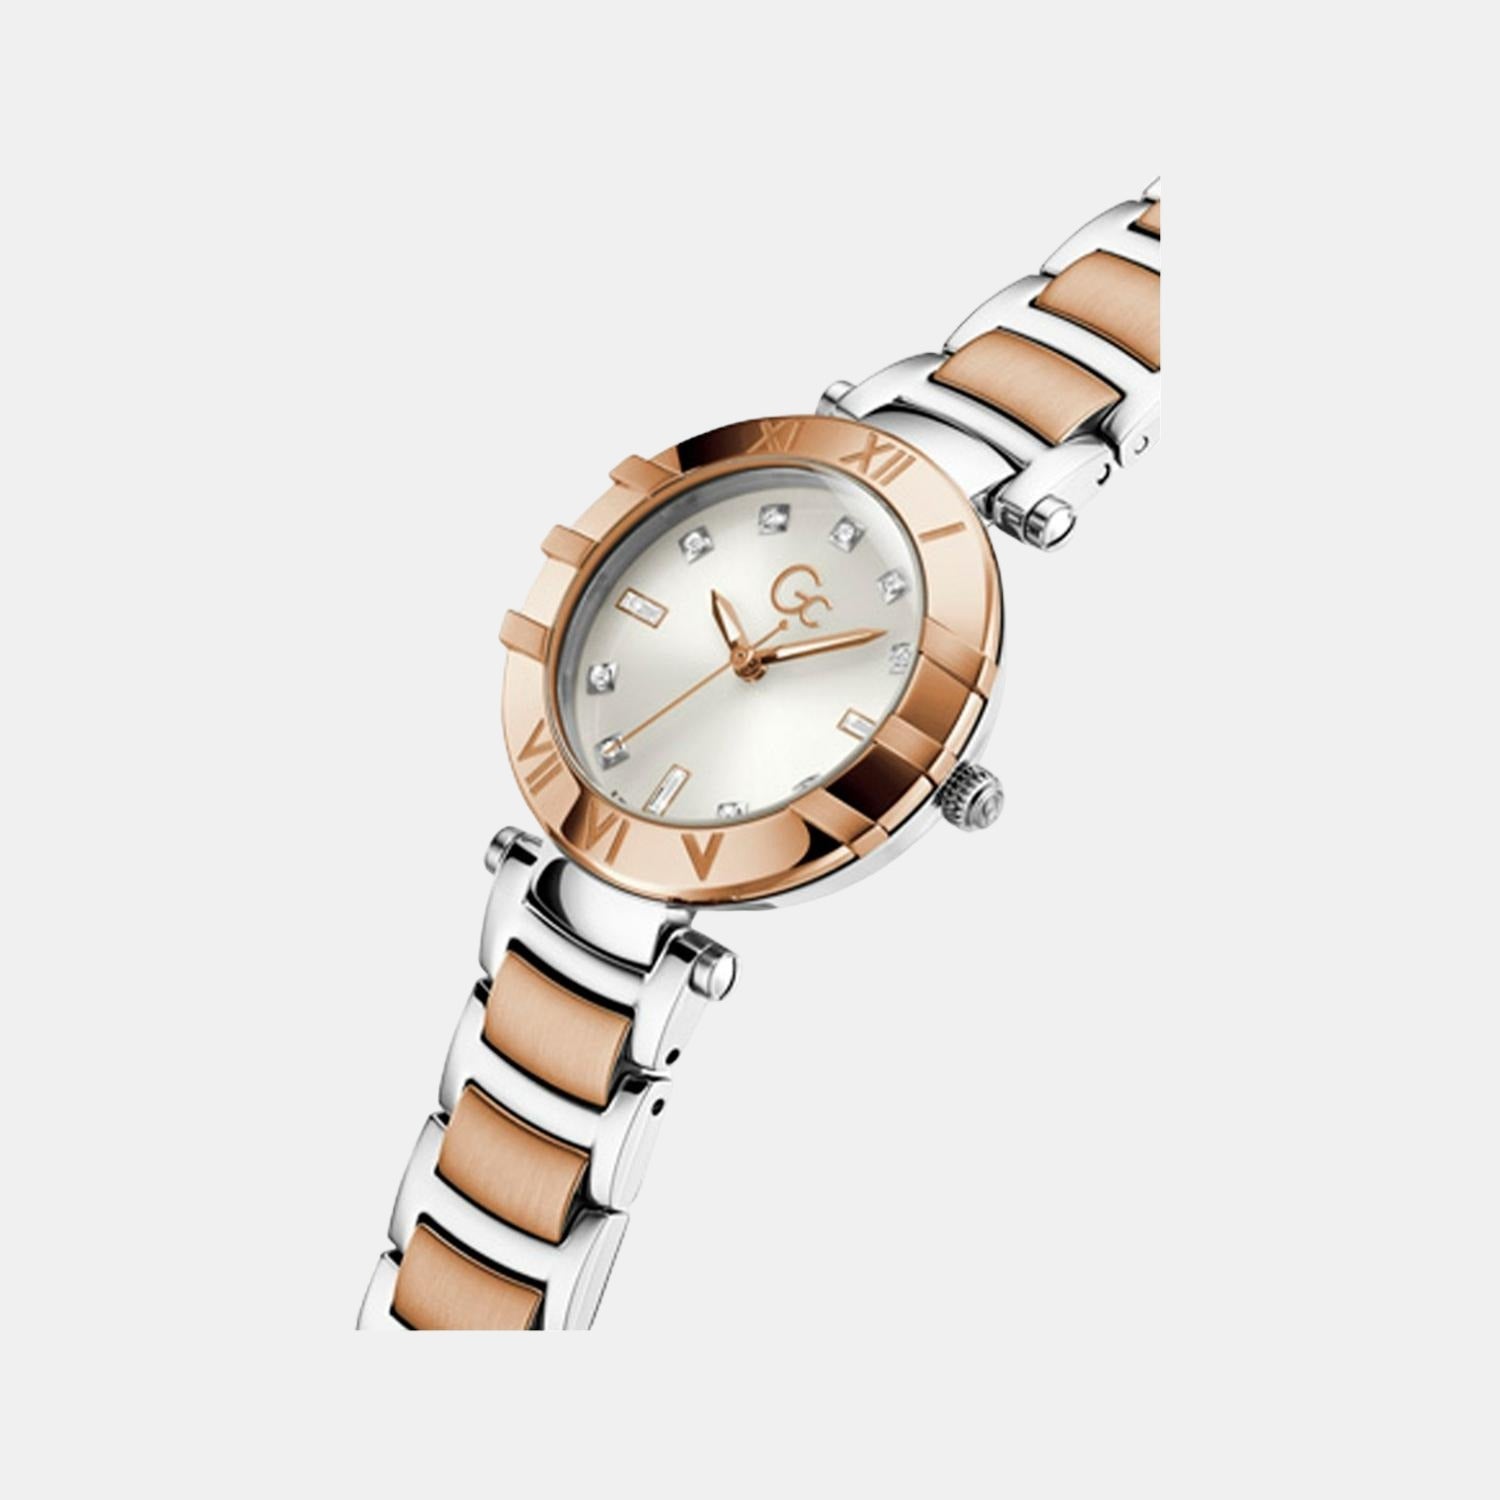 gc-white-analog-women-watch-z03001l1mf